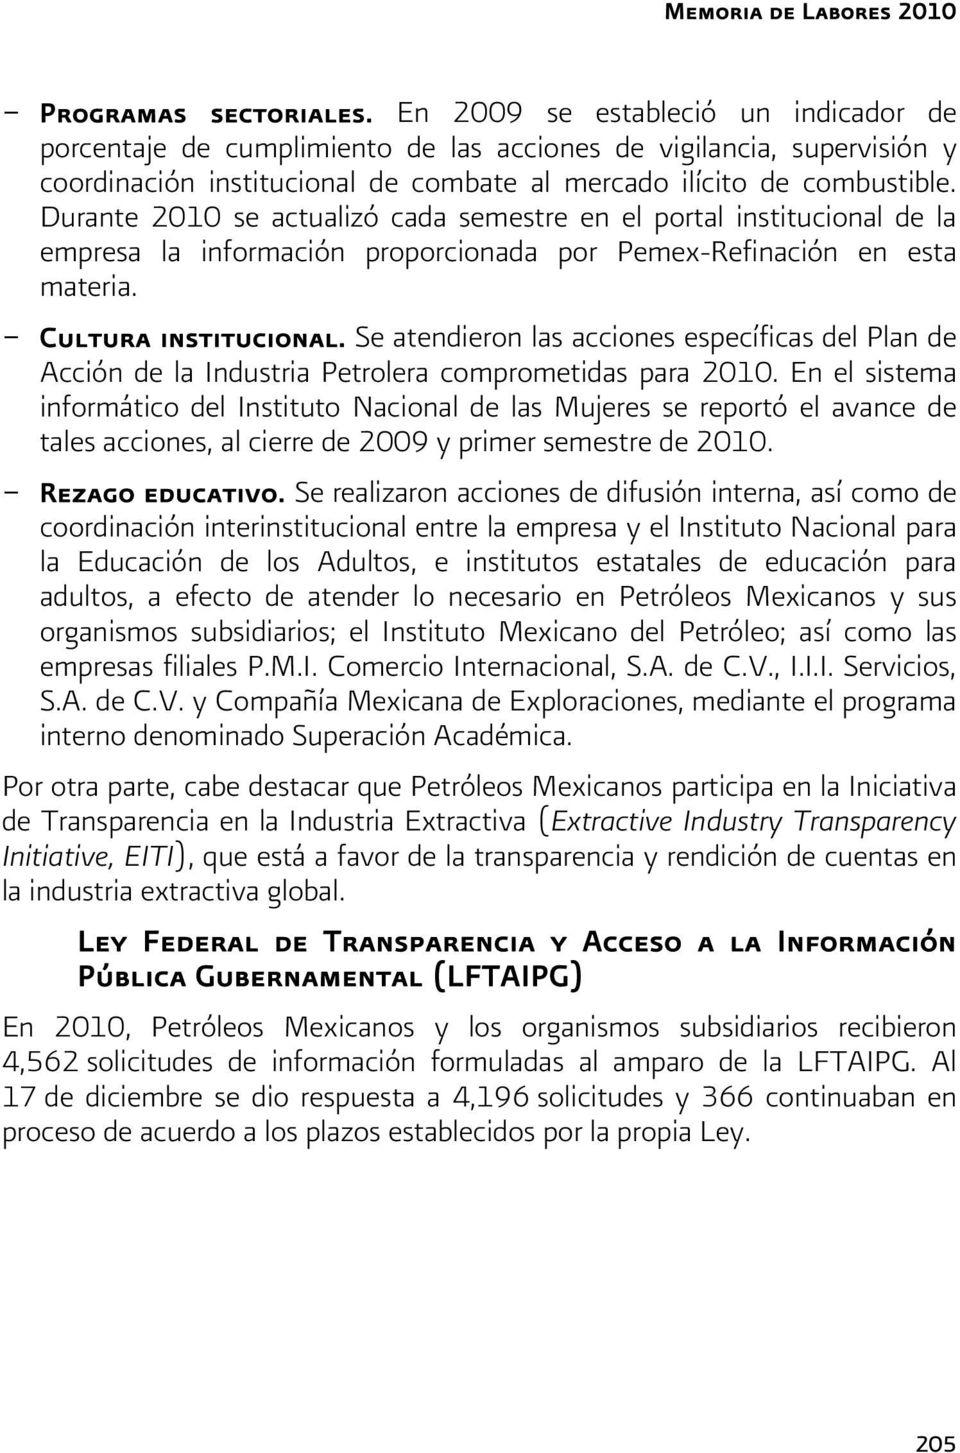 Durante 2010 se actualizó cada semestre en el portal institucional de la empresa la información proporcionada por Pemex-Refinación en esta materia. - Cultura institucional.